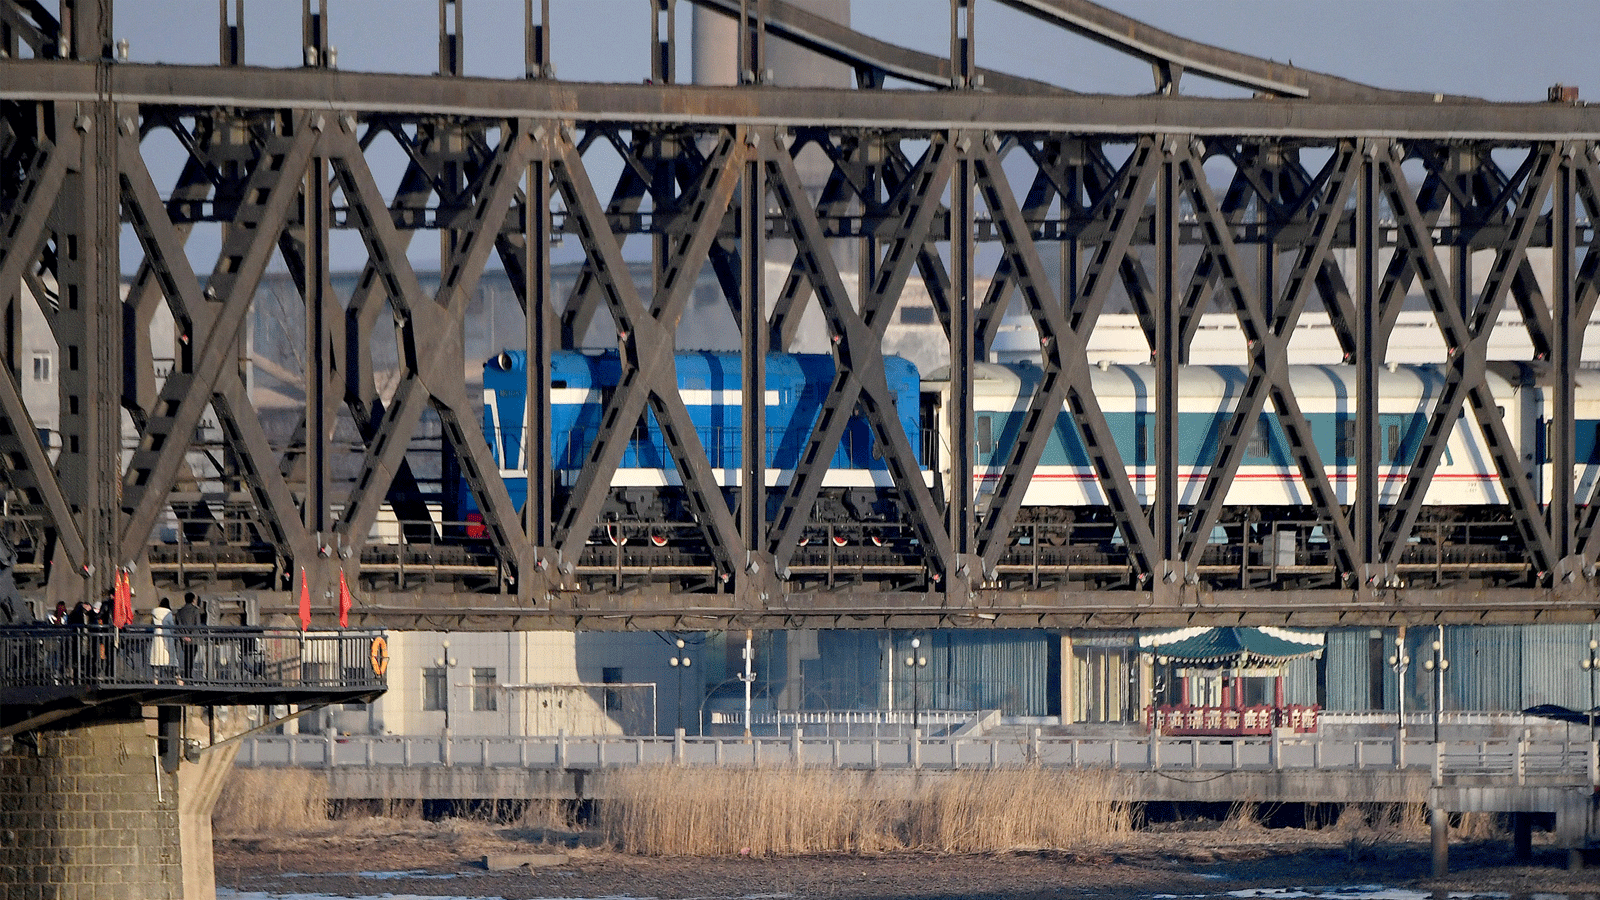  قطار ركاب مجدول يعبر جسر الصداقة الصينية الكورية من كوريا الشمالية إلى مدينة داندونغ الصينية الحدودية في مقاطعة لياونينغ شمال شرق الصين في 23 شباط\فبراير 2019.